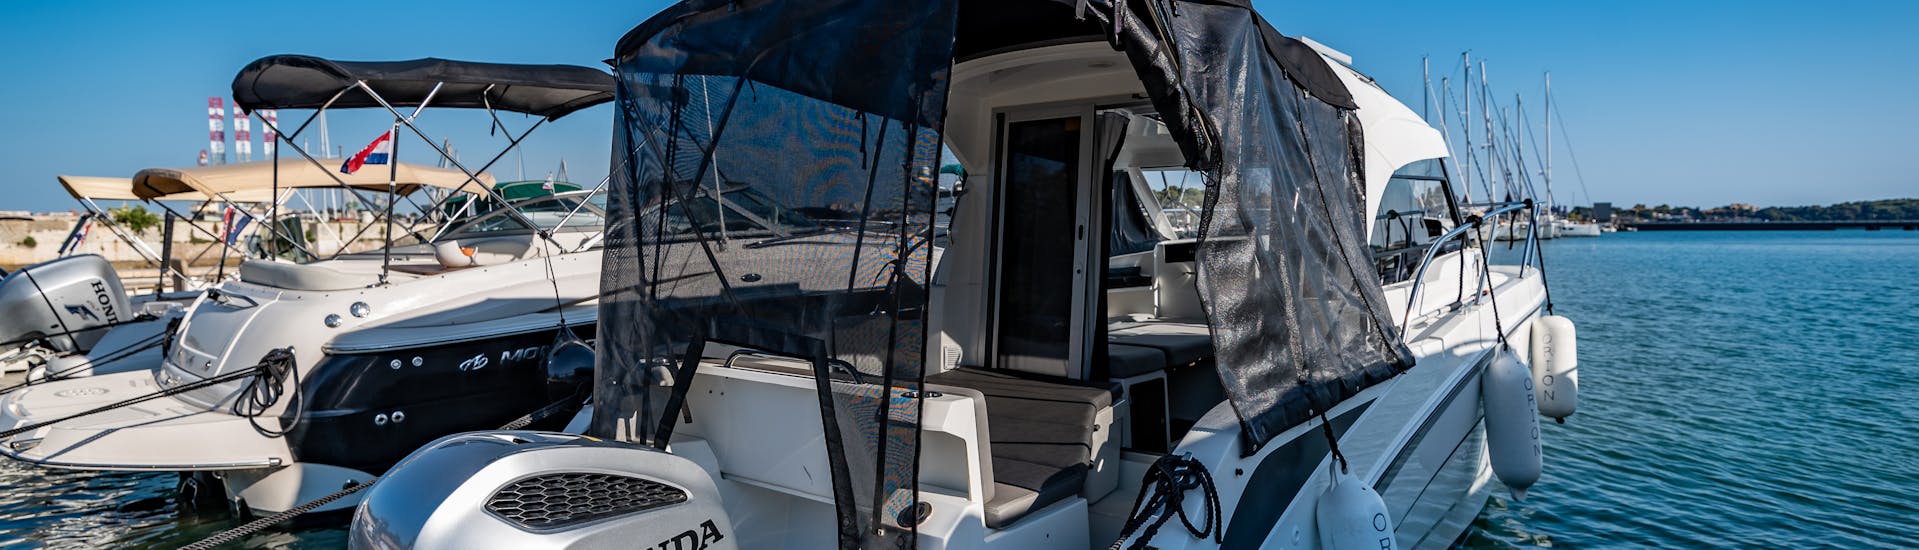 Die Beneteau Antares 8 ist bereit zum Navigieren während des Bootsverleihs in Pula Stadt (bis zu 9 Personen) - Rovinj & Vrsar